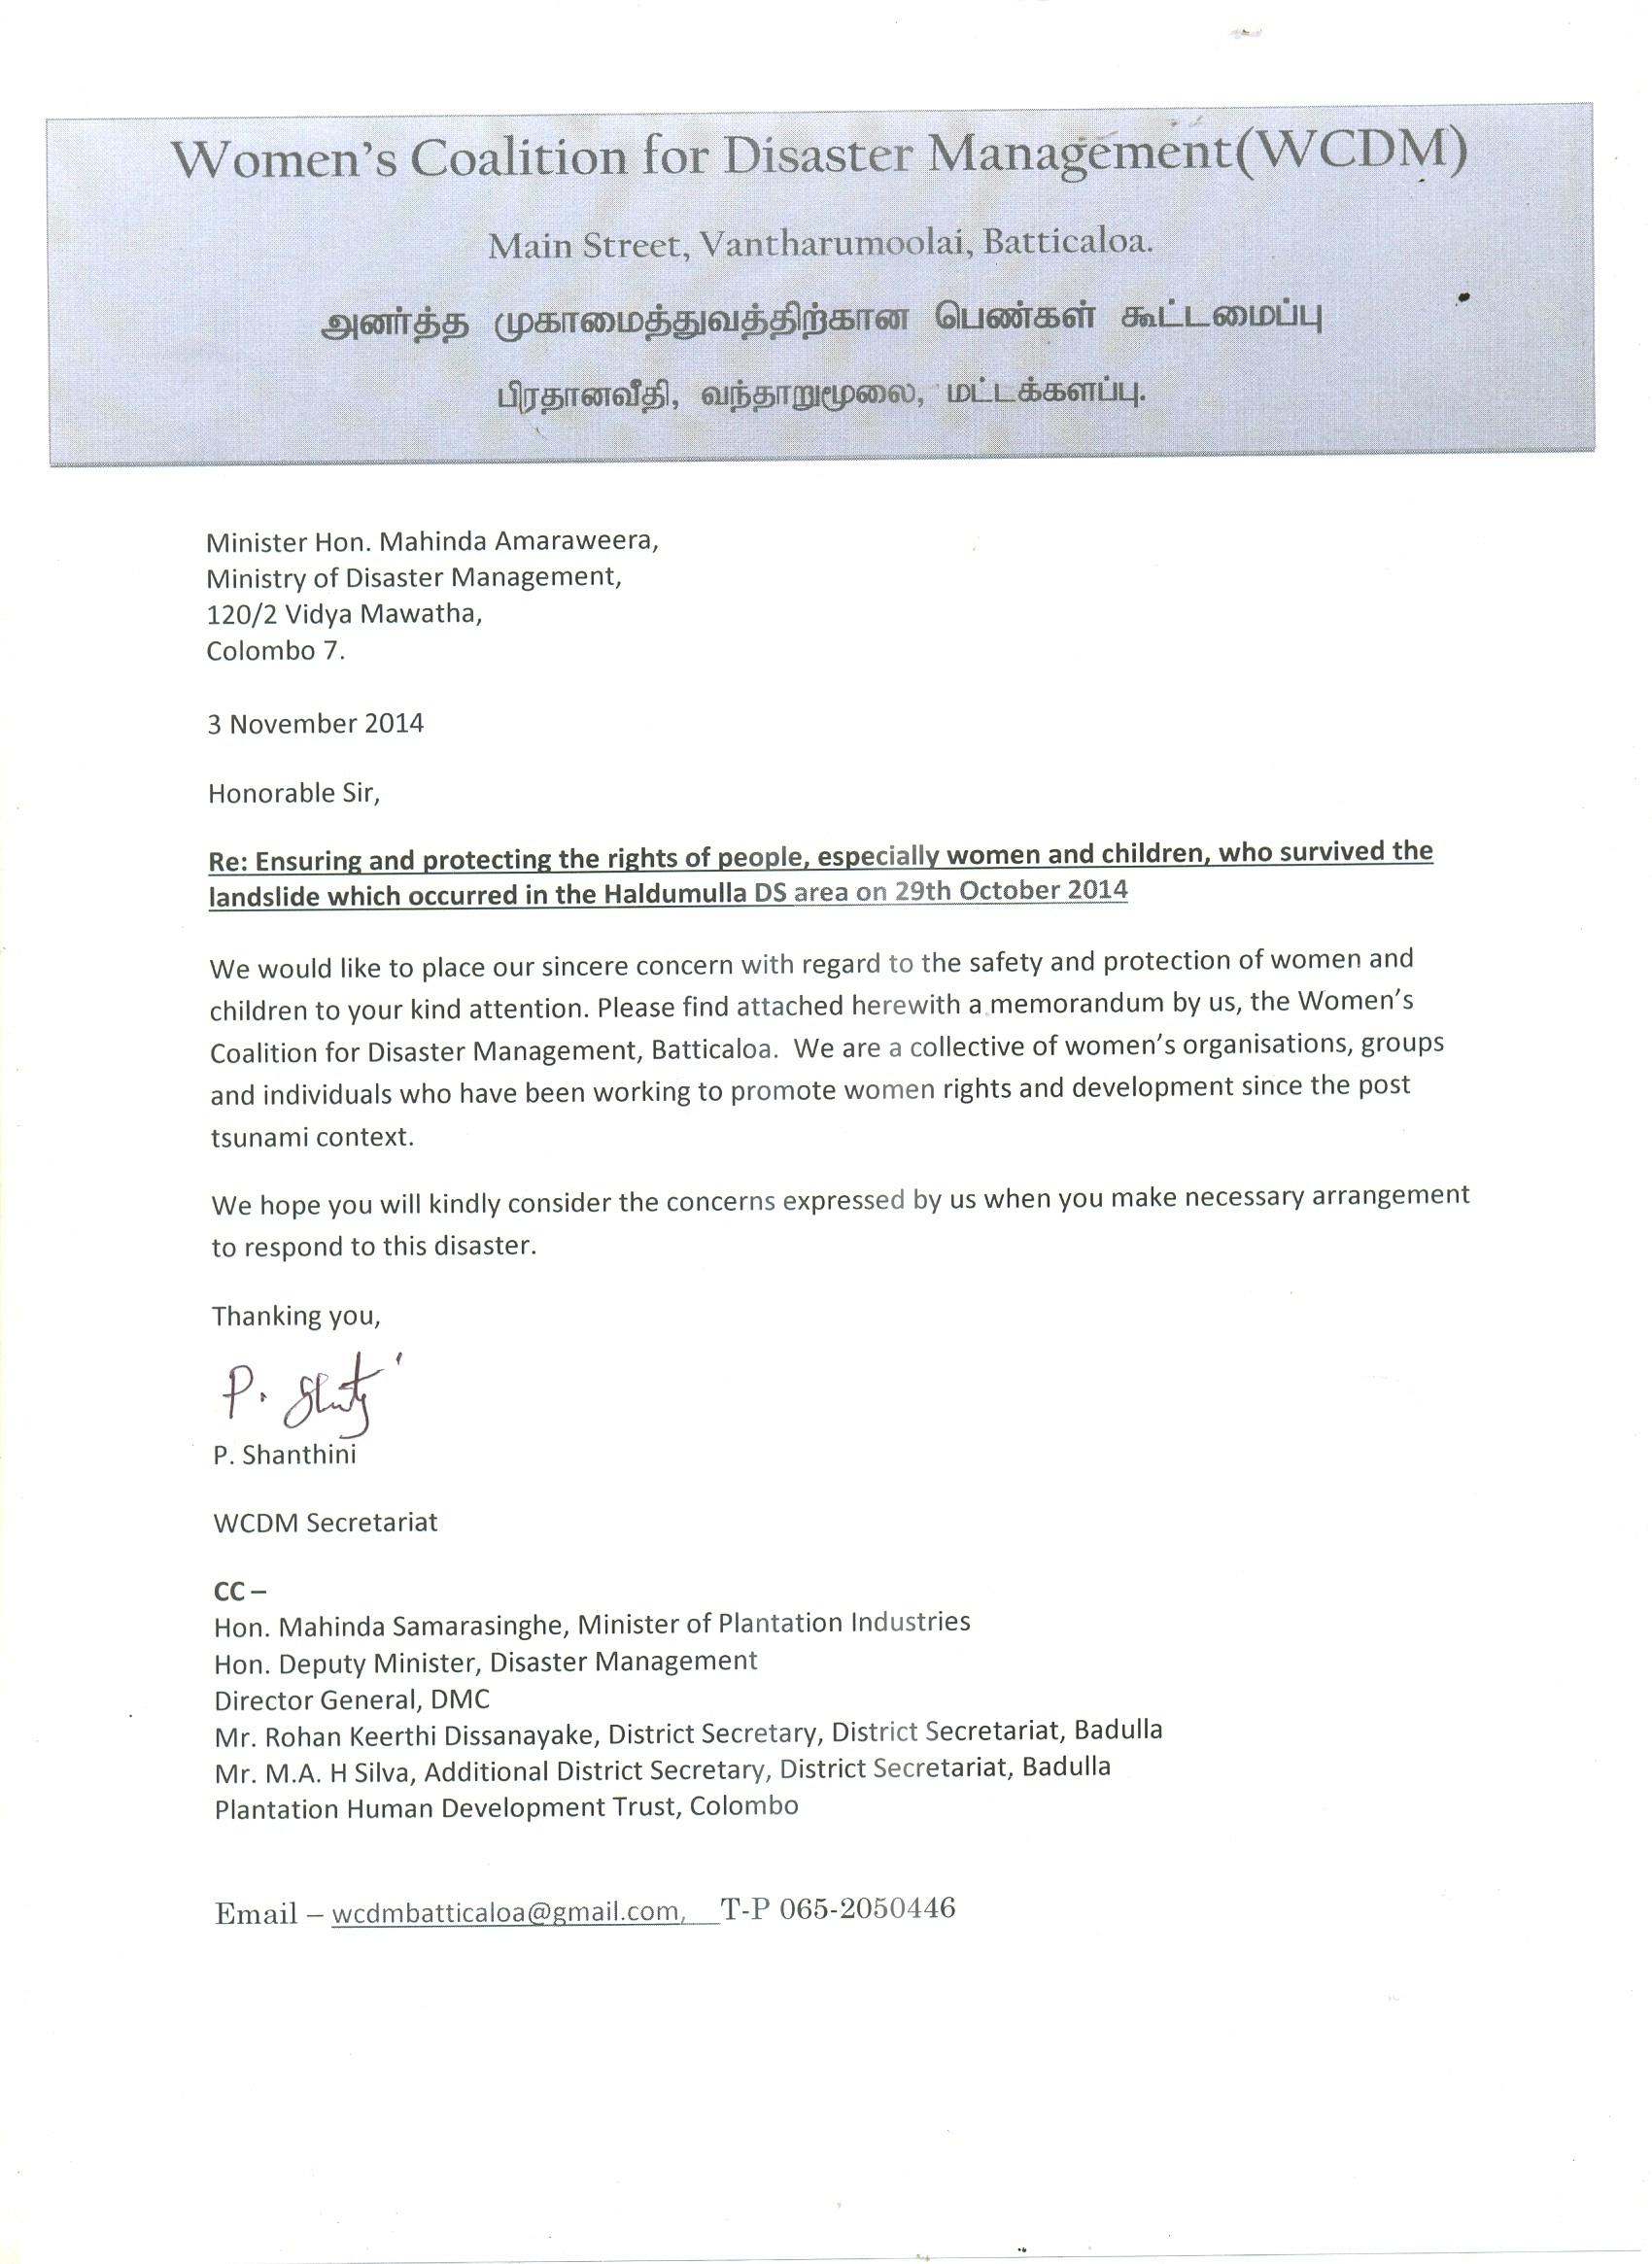 Covering Letter - Memorandum to the Hon.Minister on Koslanda landslide - 03.11.2014